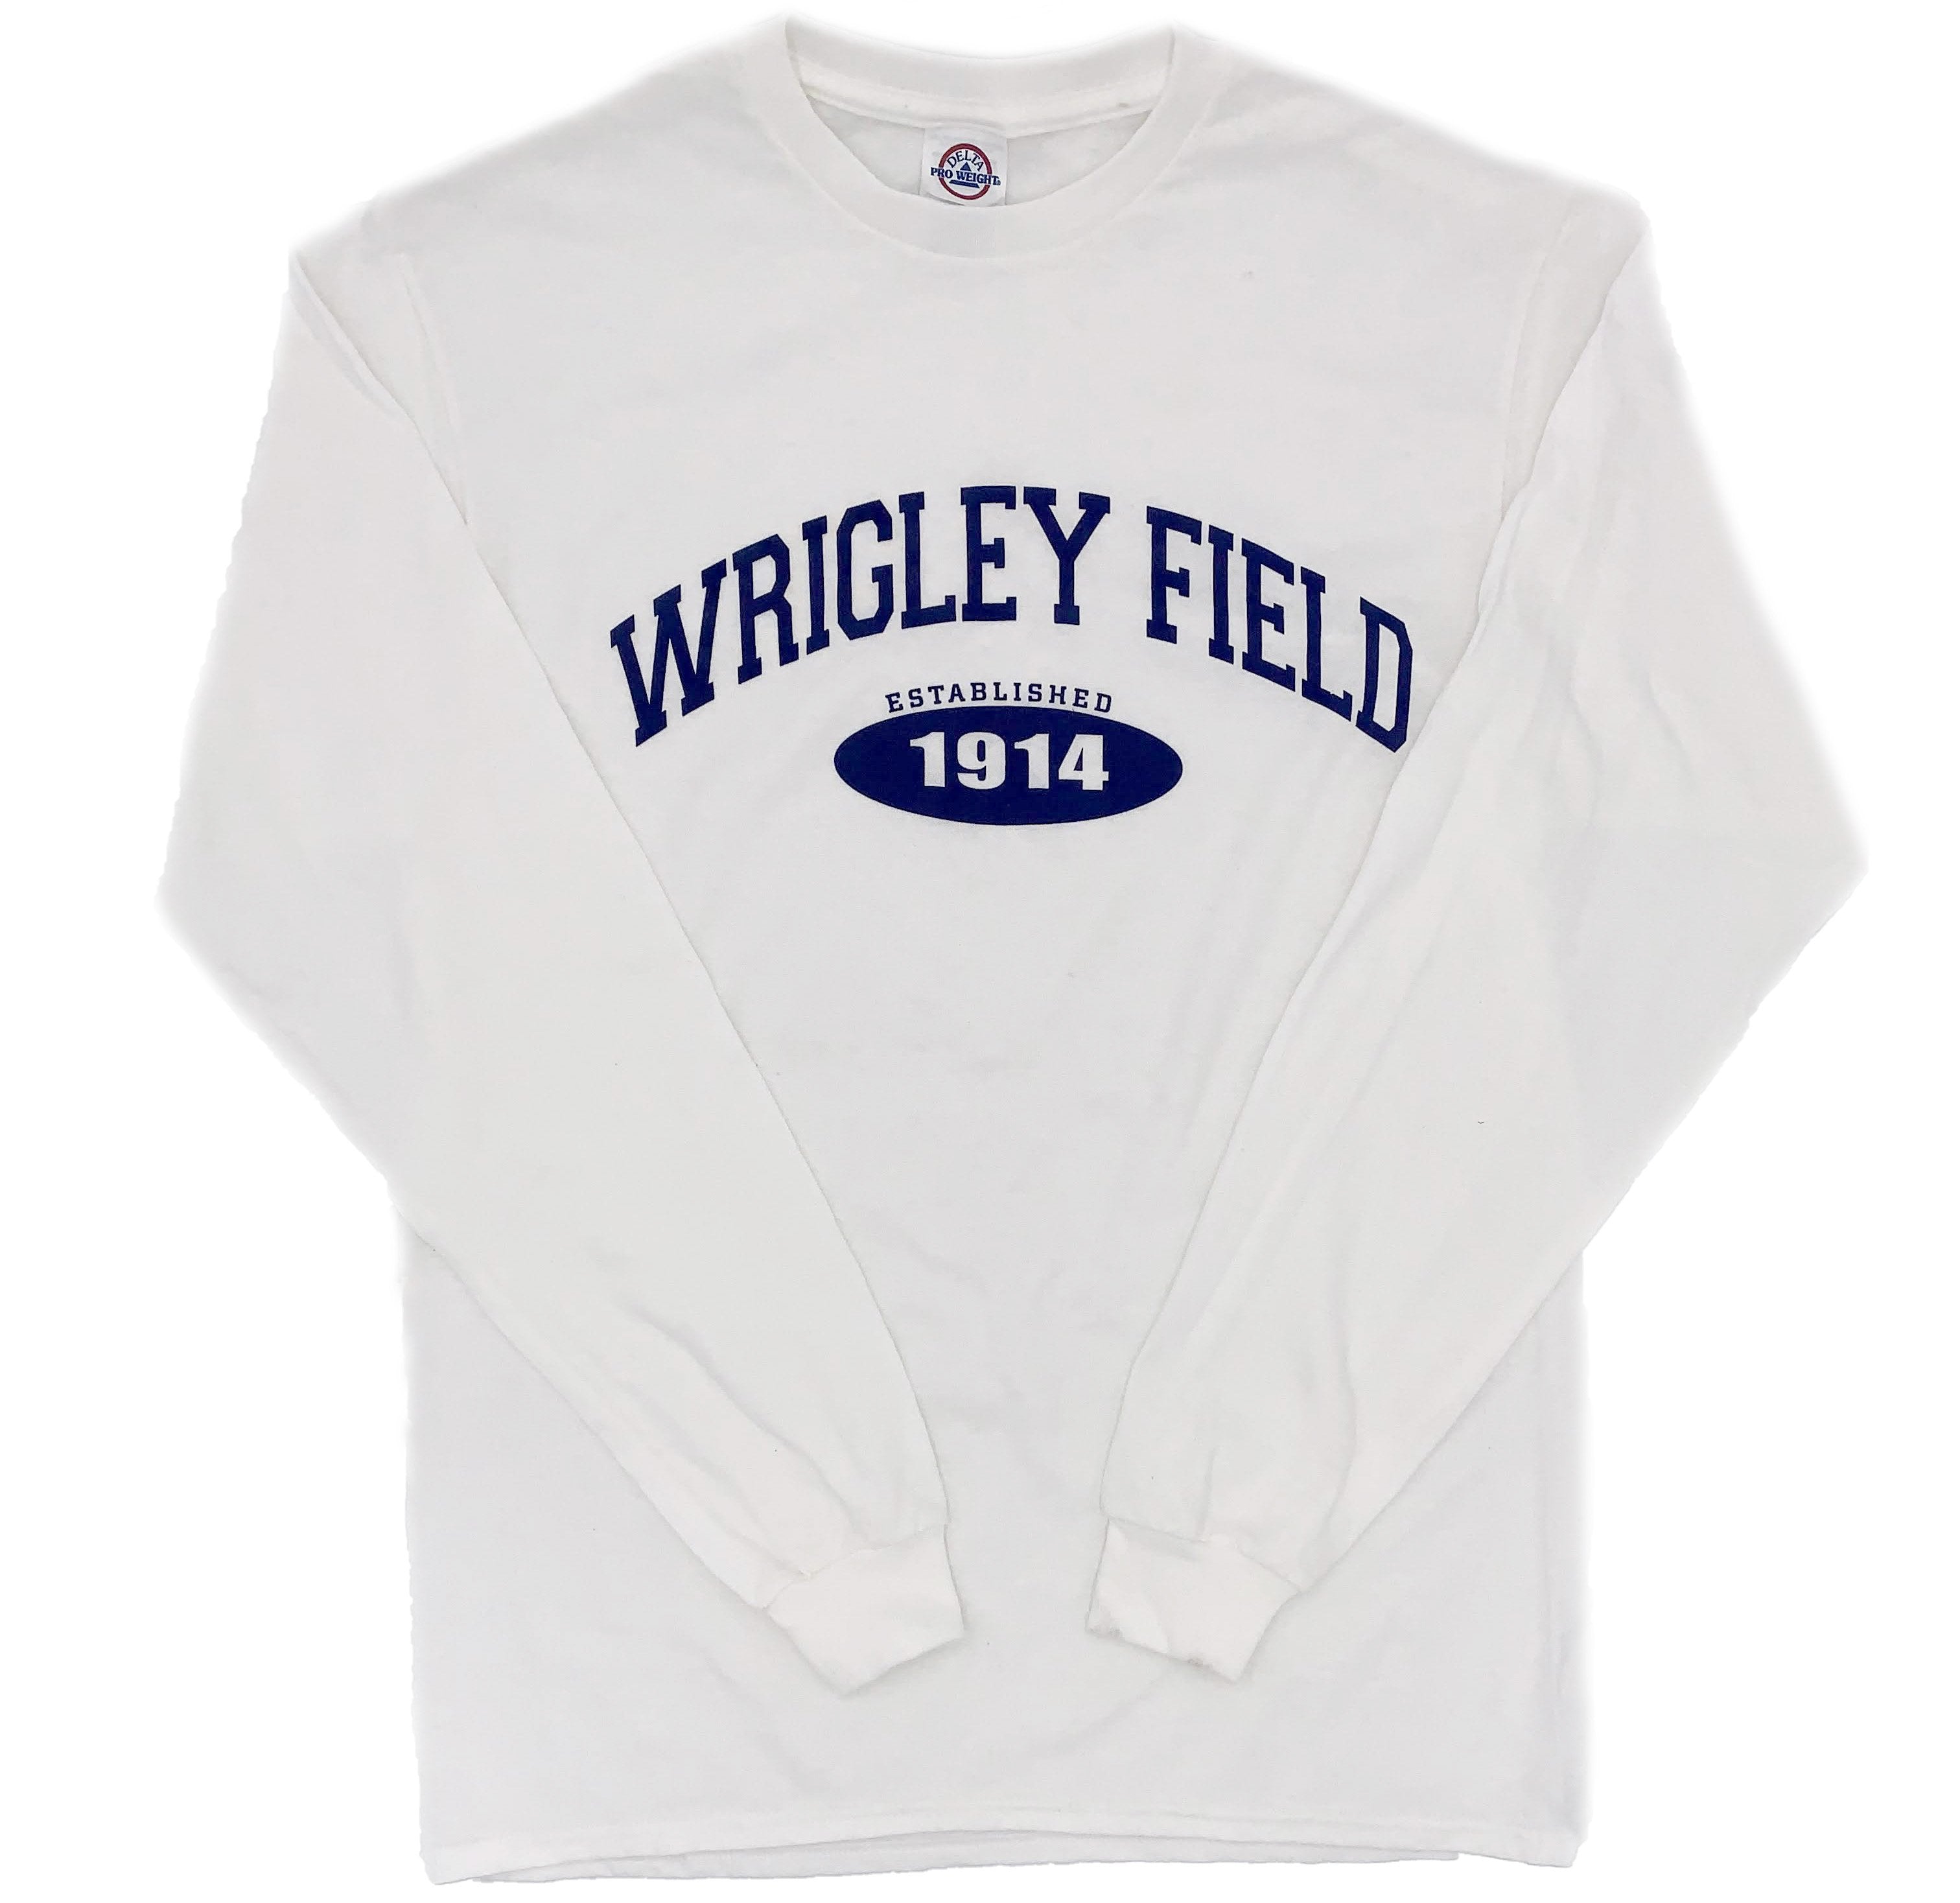 wrigley field gear